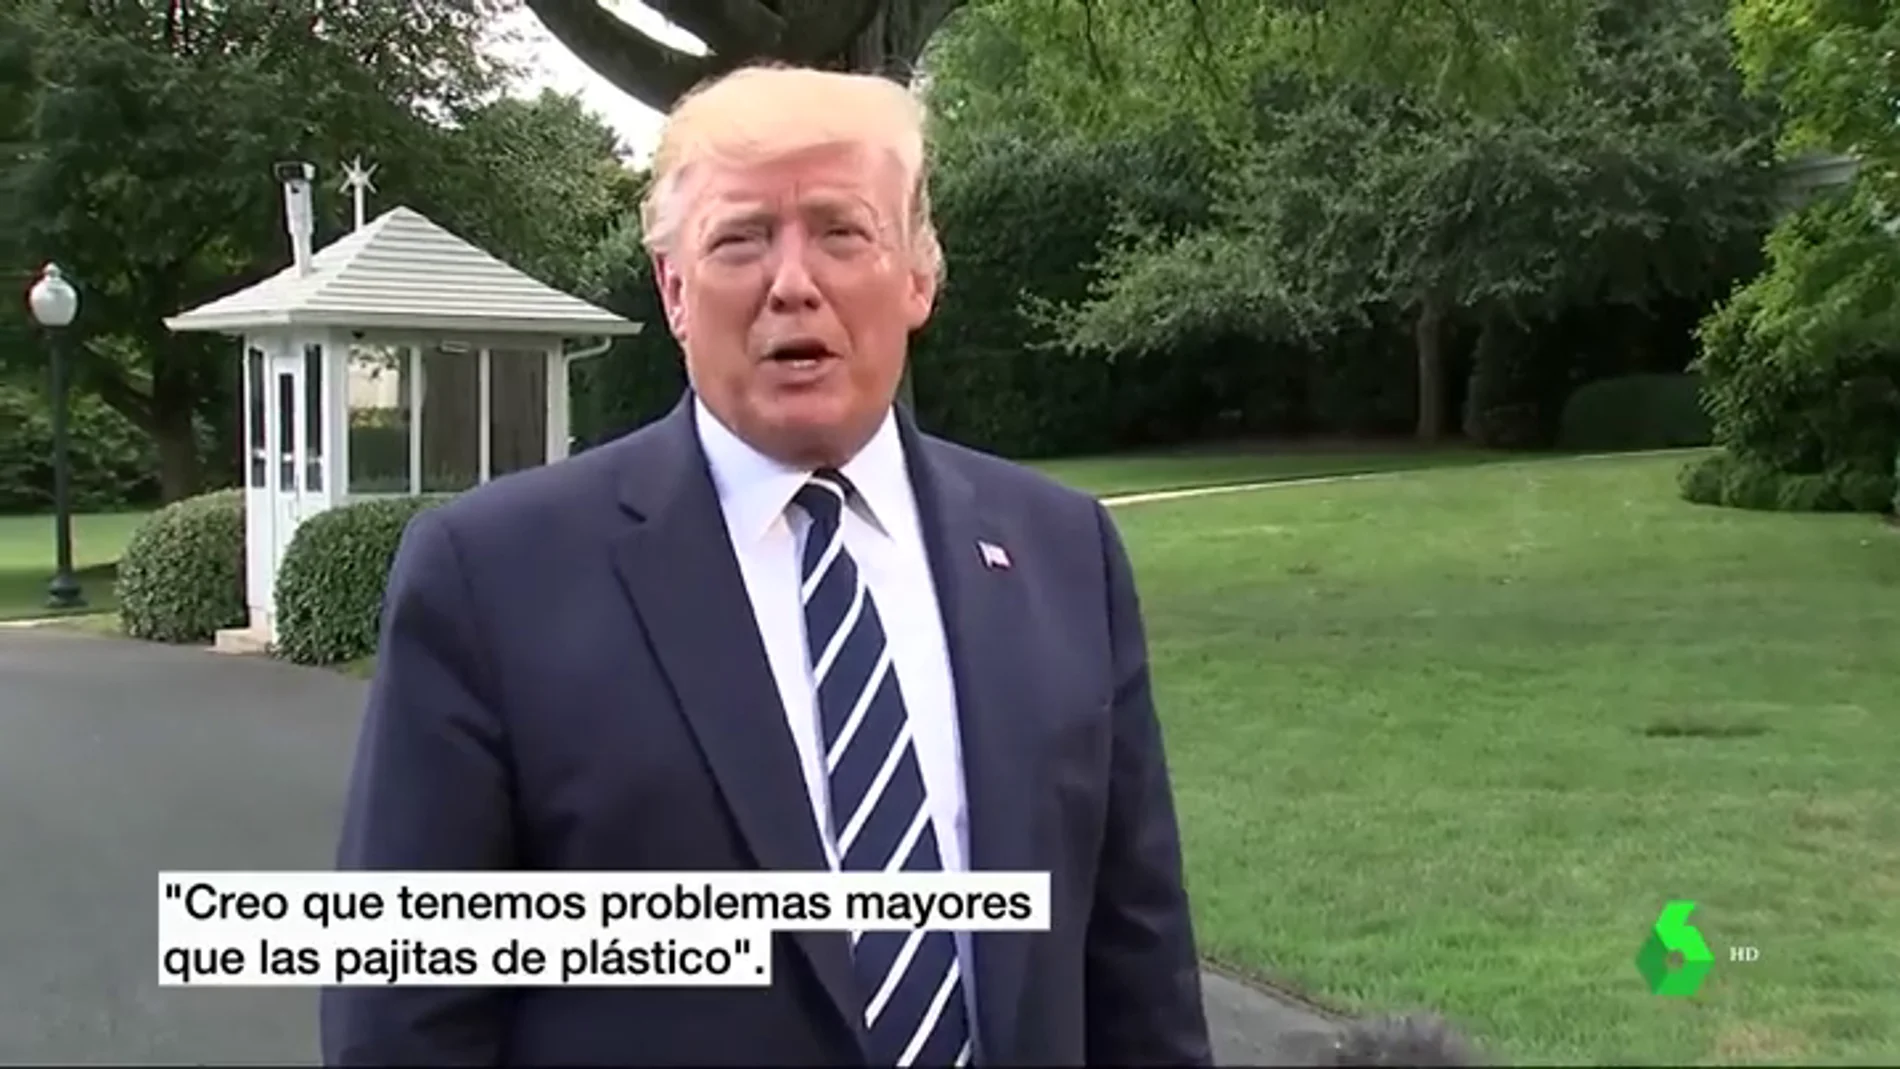 Campaña de Donald Trump contra la prohibición de las pajitas de plástico: "Creo que tenemos problemas mayores"